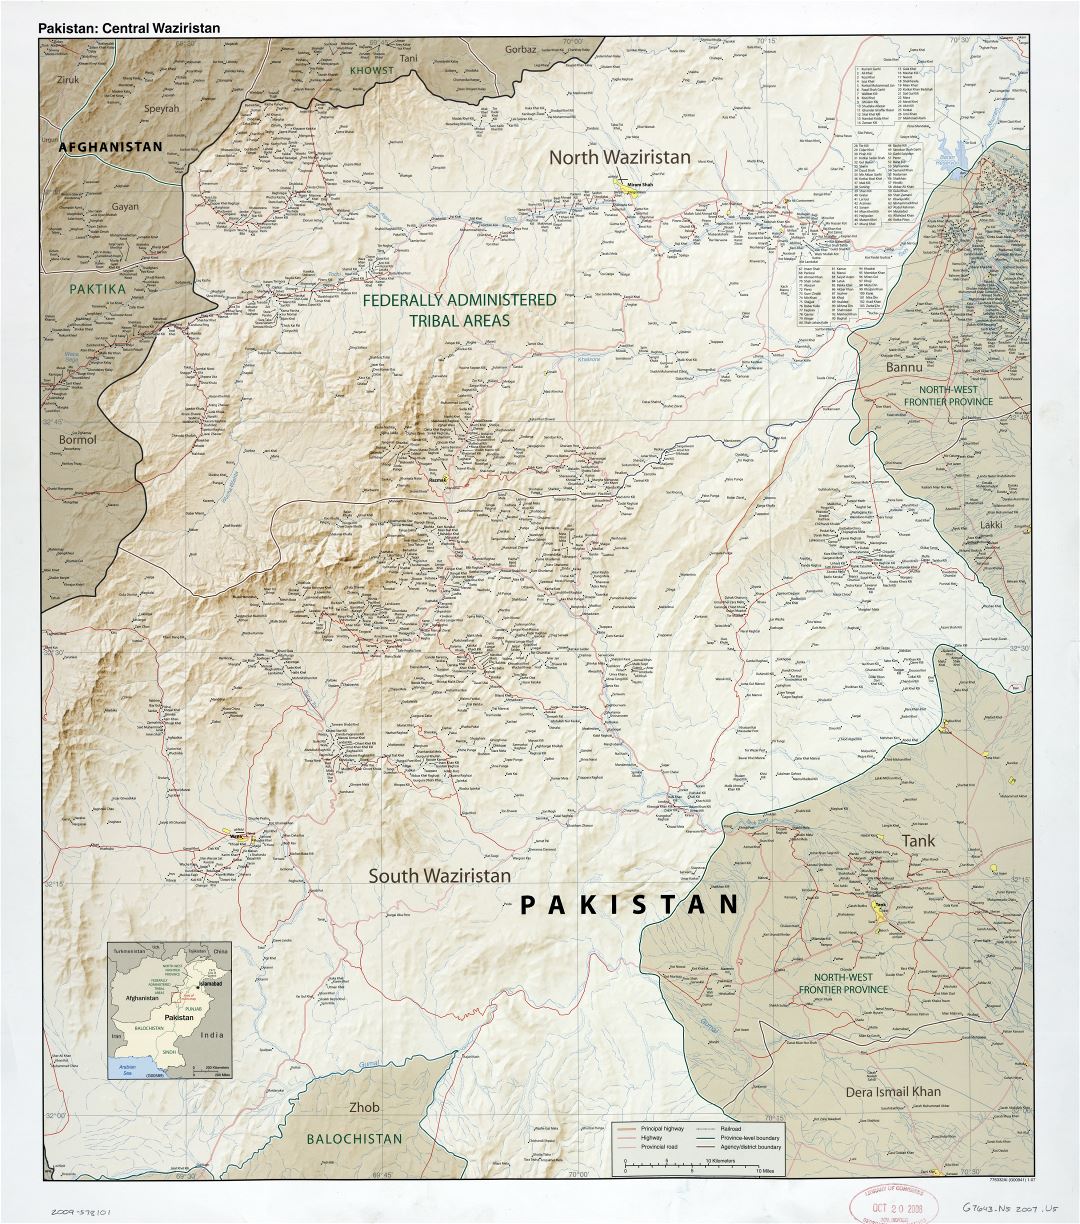 Grande detallado mapa de Pakistán (Waziristán Central) con relieve, carreteras, ferrocarriles, todas ciudades y pueblos - 2007